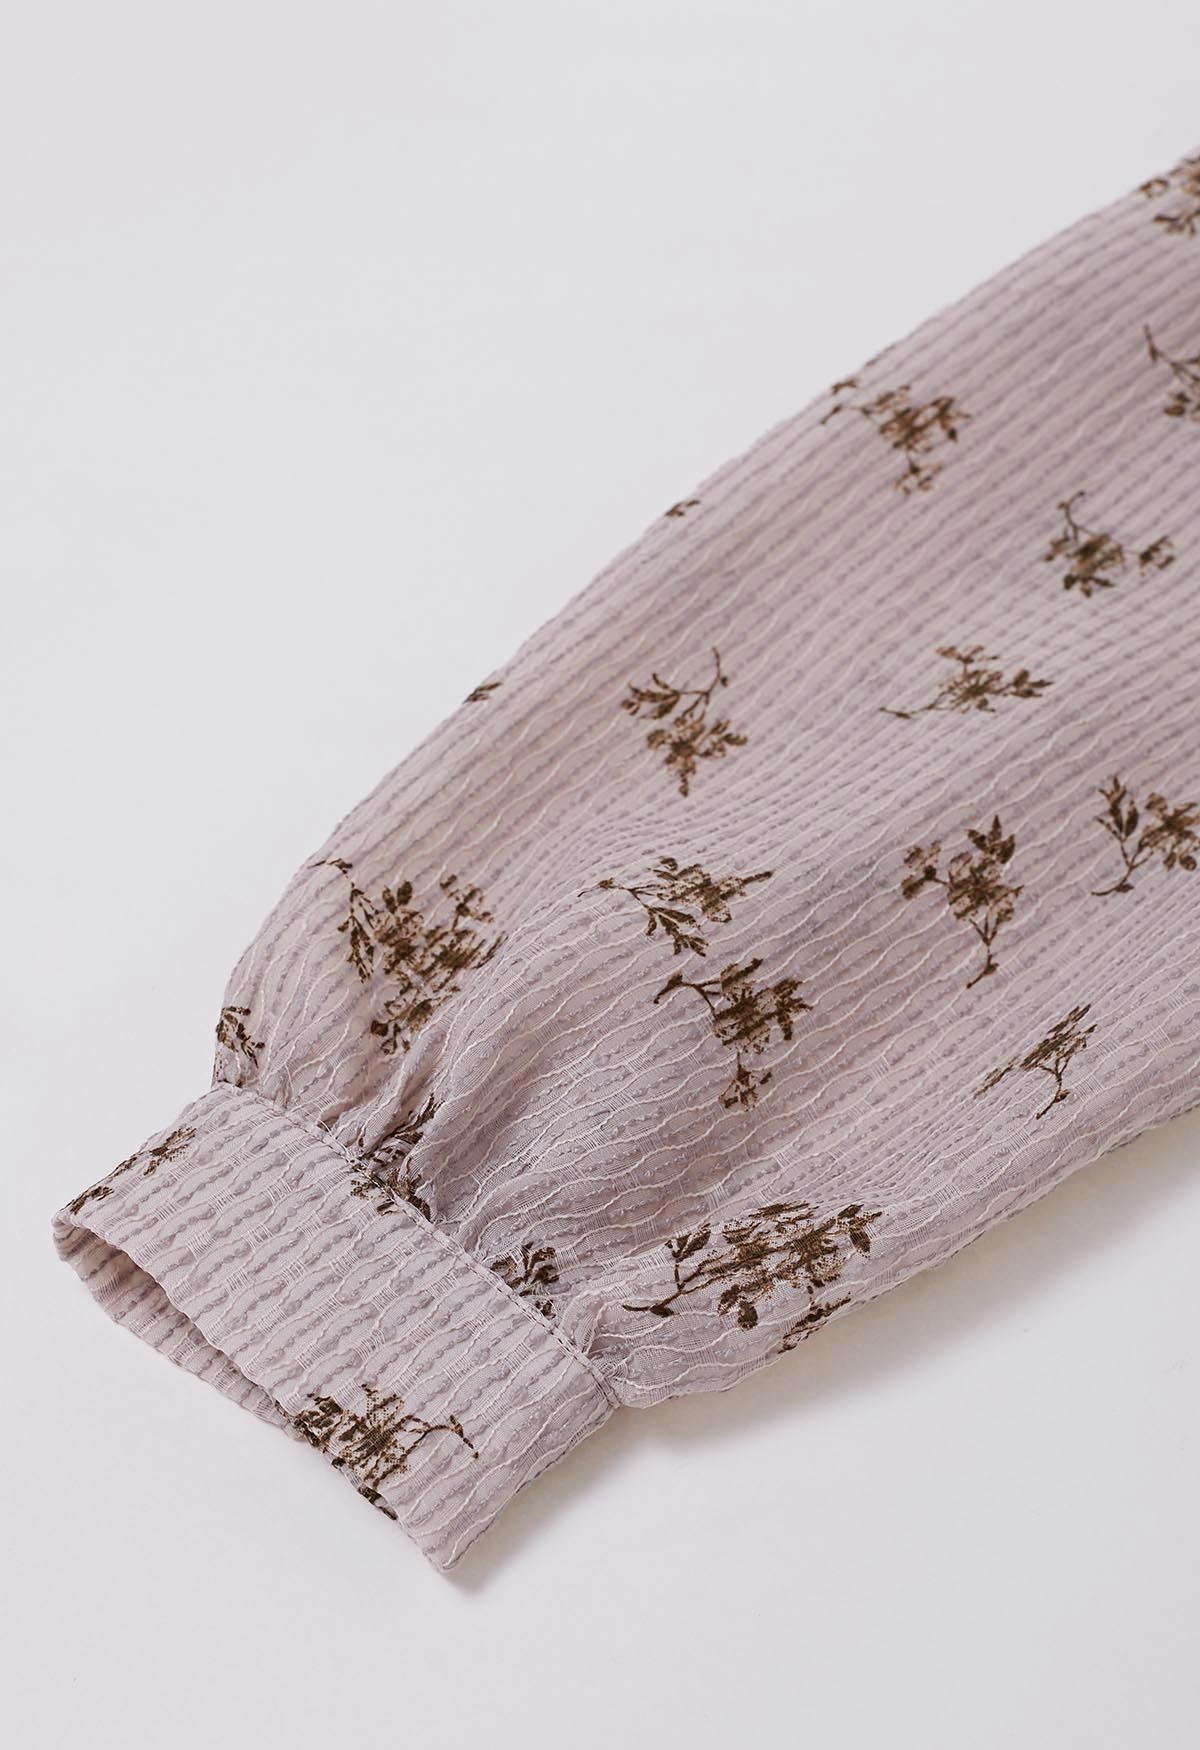 Strukturiertes Button-Down-Hemd mit Floret-Print in Altrosa